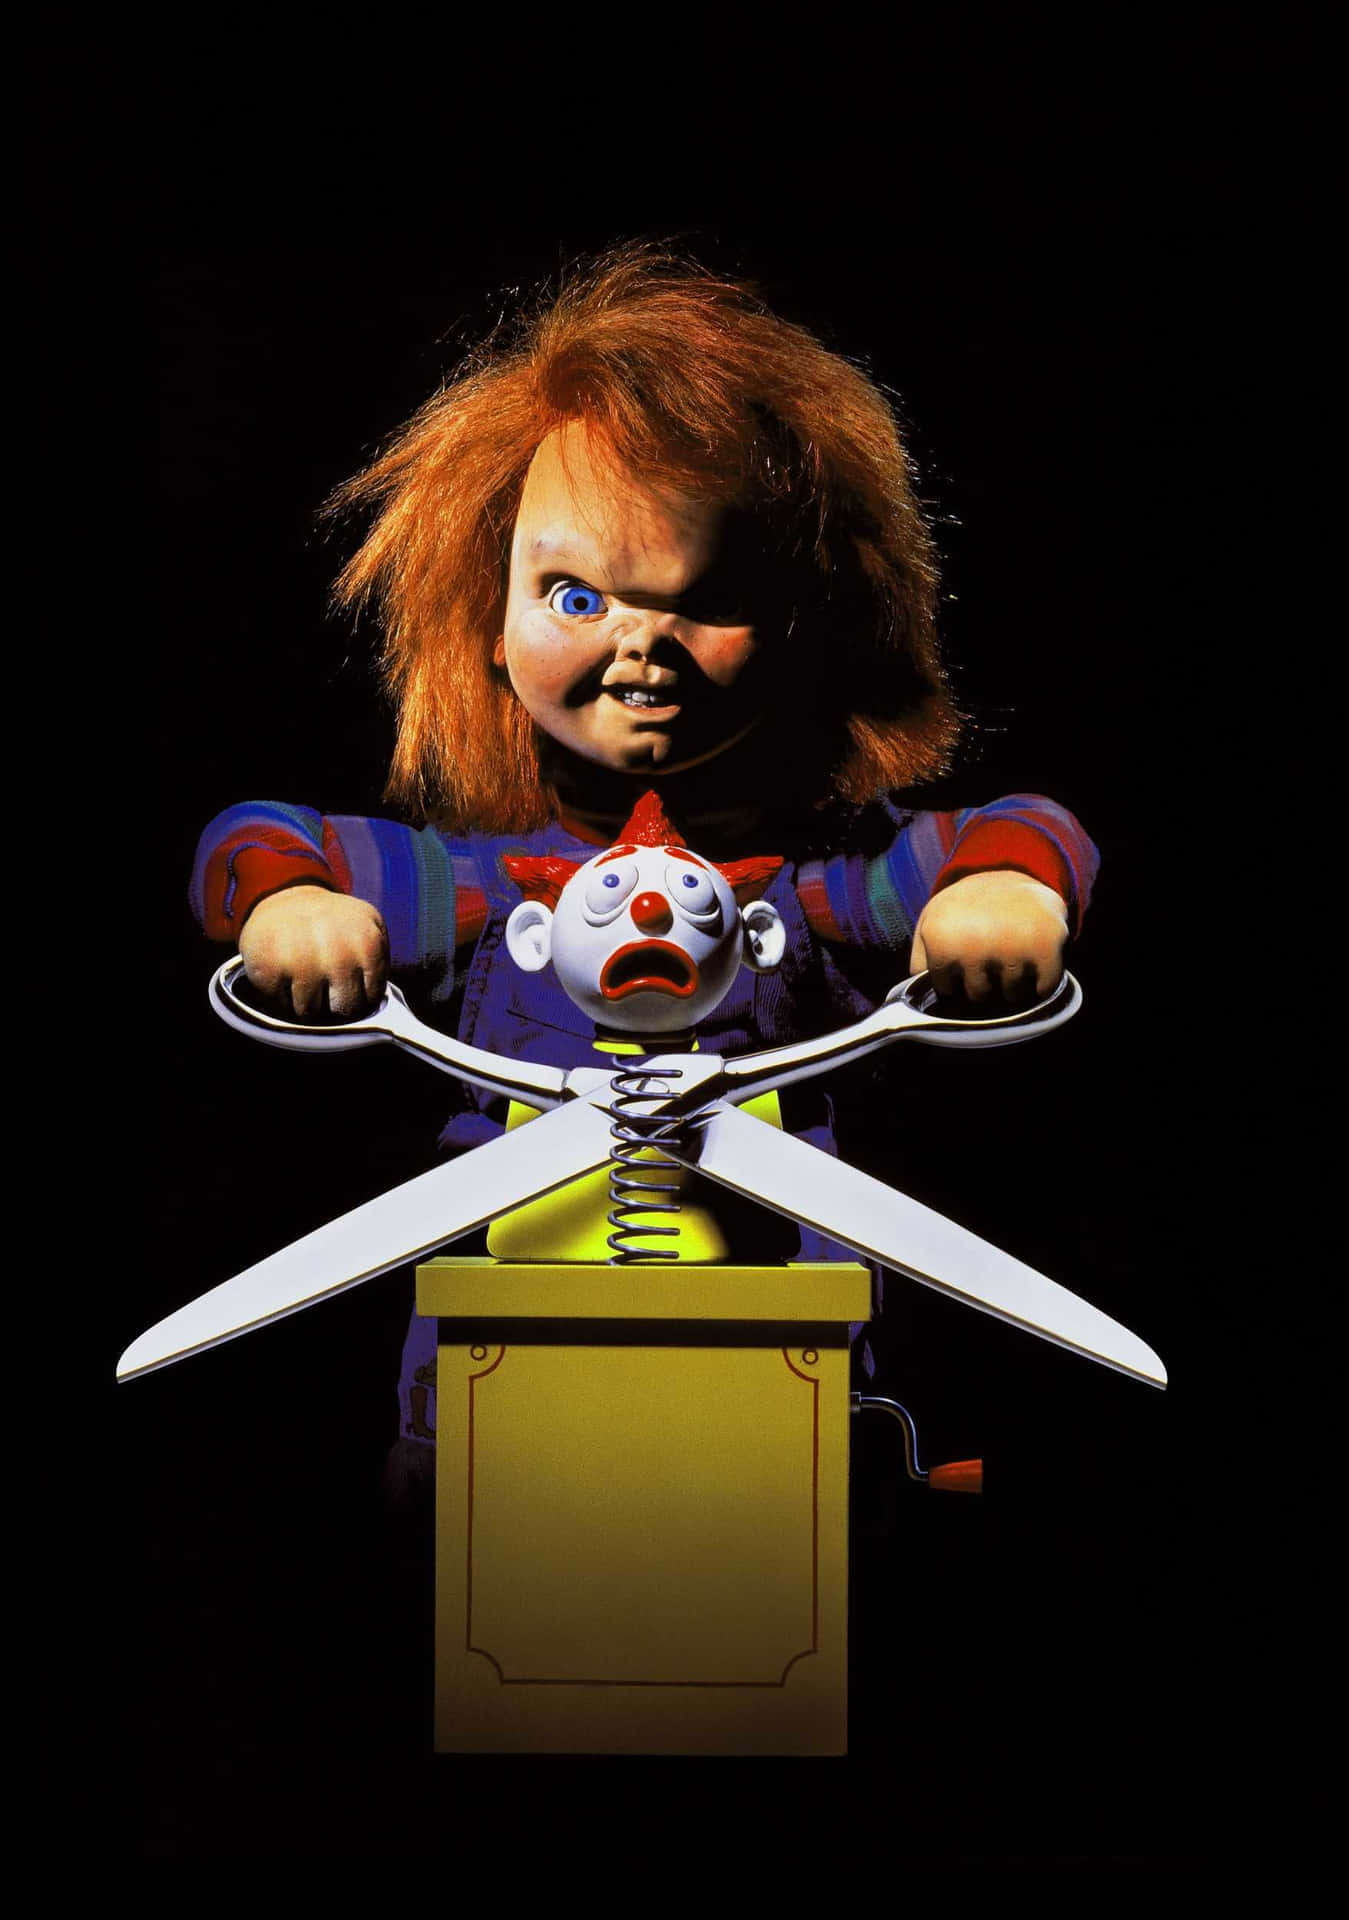 Chucky,la Sinistra Bambola Vivente E Iconico Personaggio Dell'horror Culto.